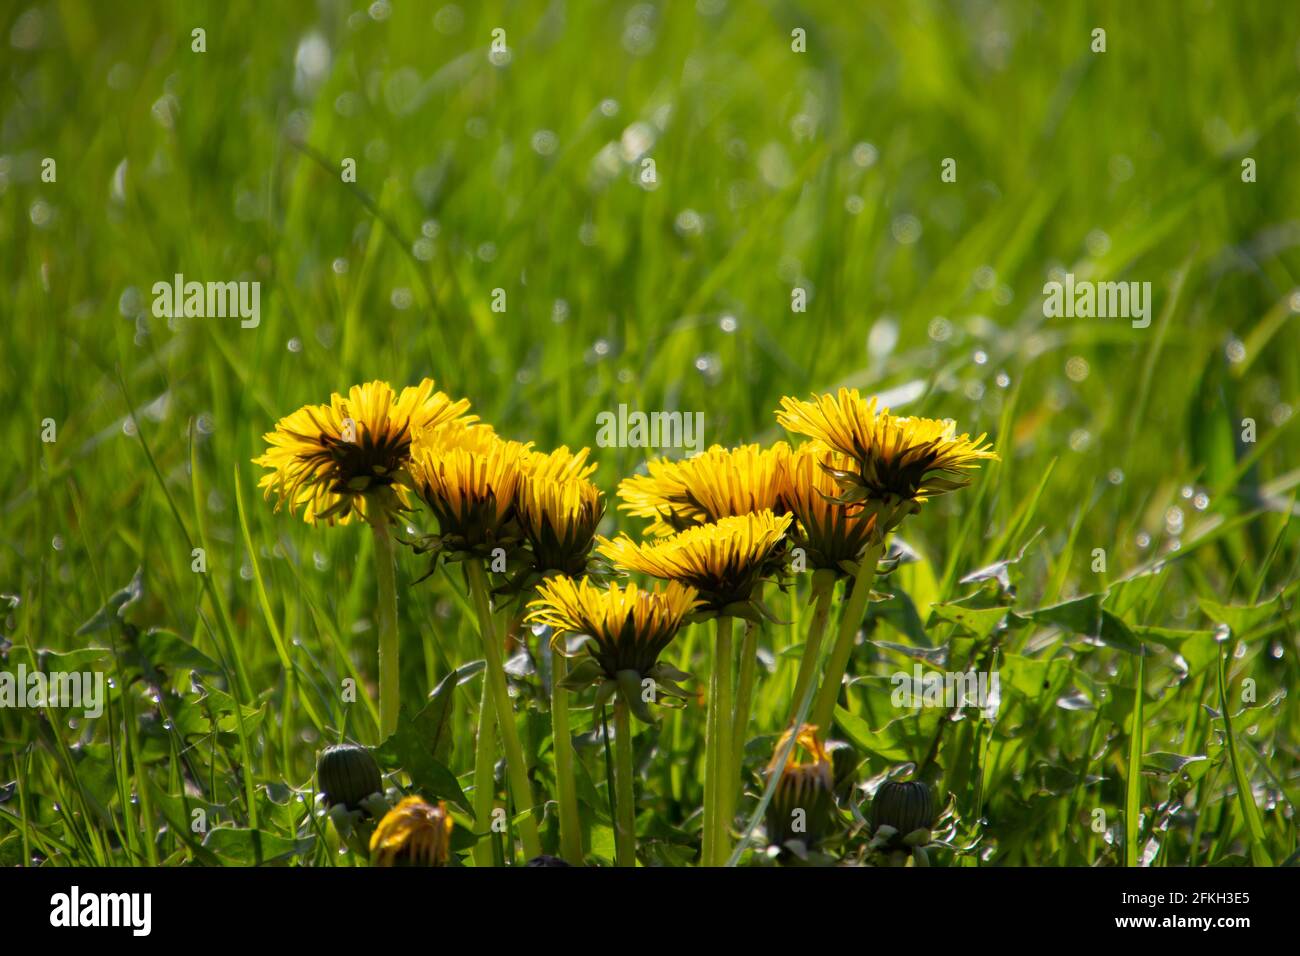 Vue latérale d'un bouquet de fleurs de pissenlit jaune vif dans l'herbe Banque D'Images